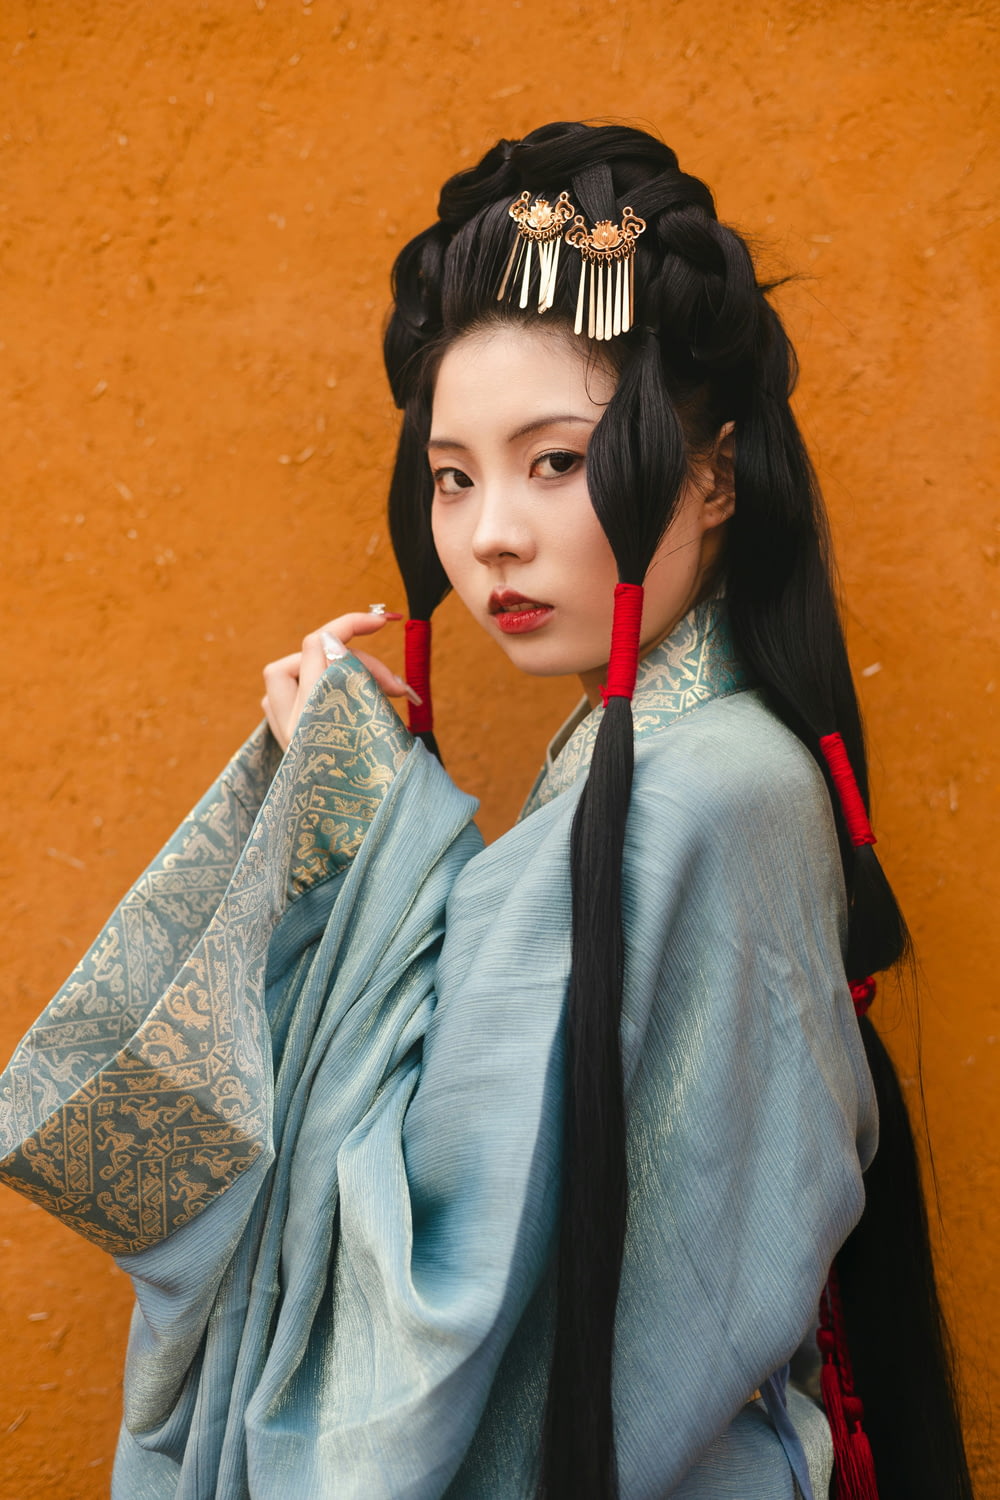 a woman with long black hair wearing a blue kimono